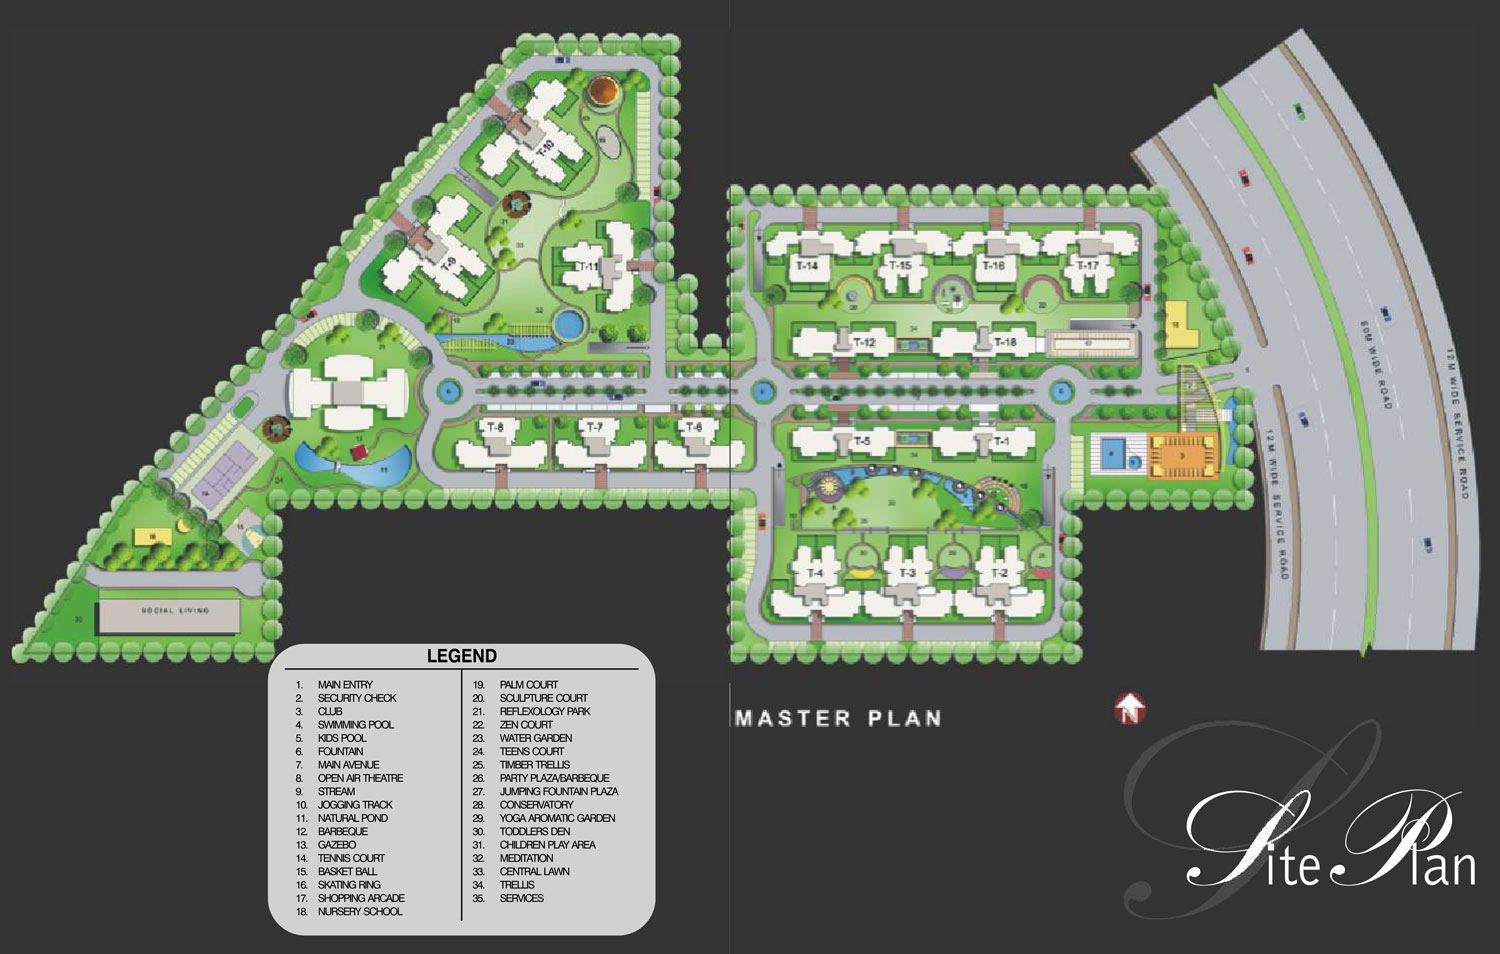 Chd Avenue 71 Master Plan